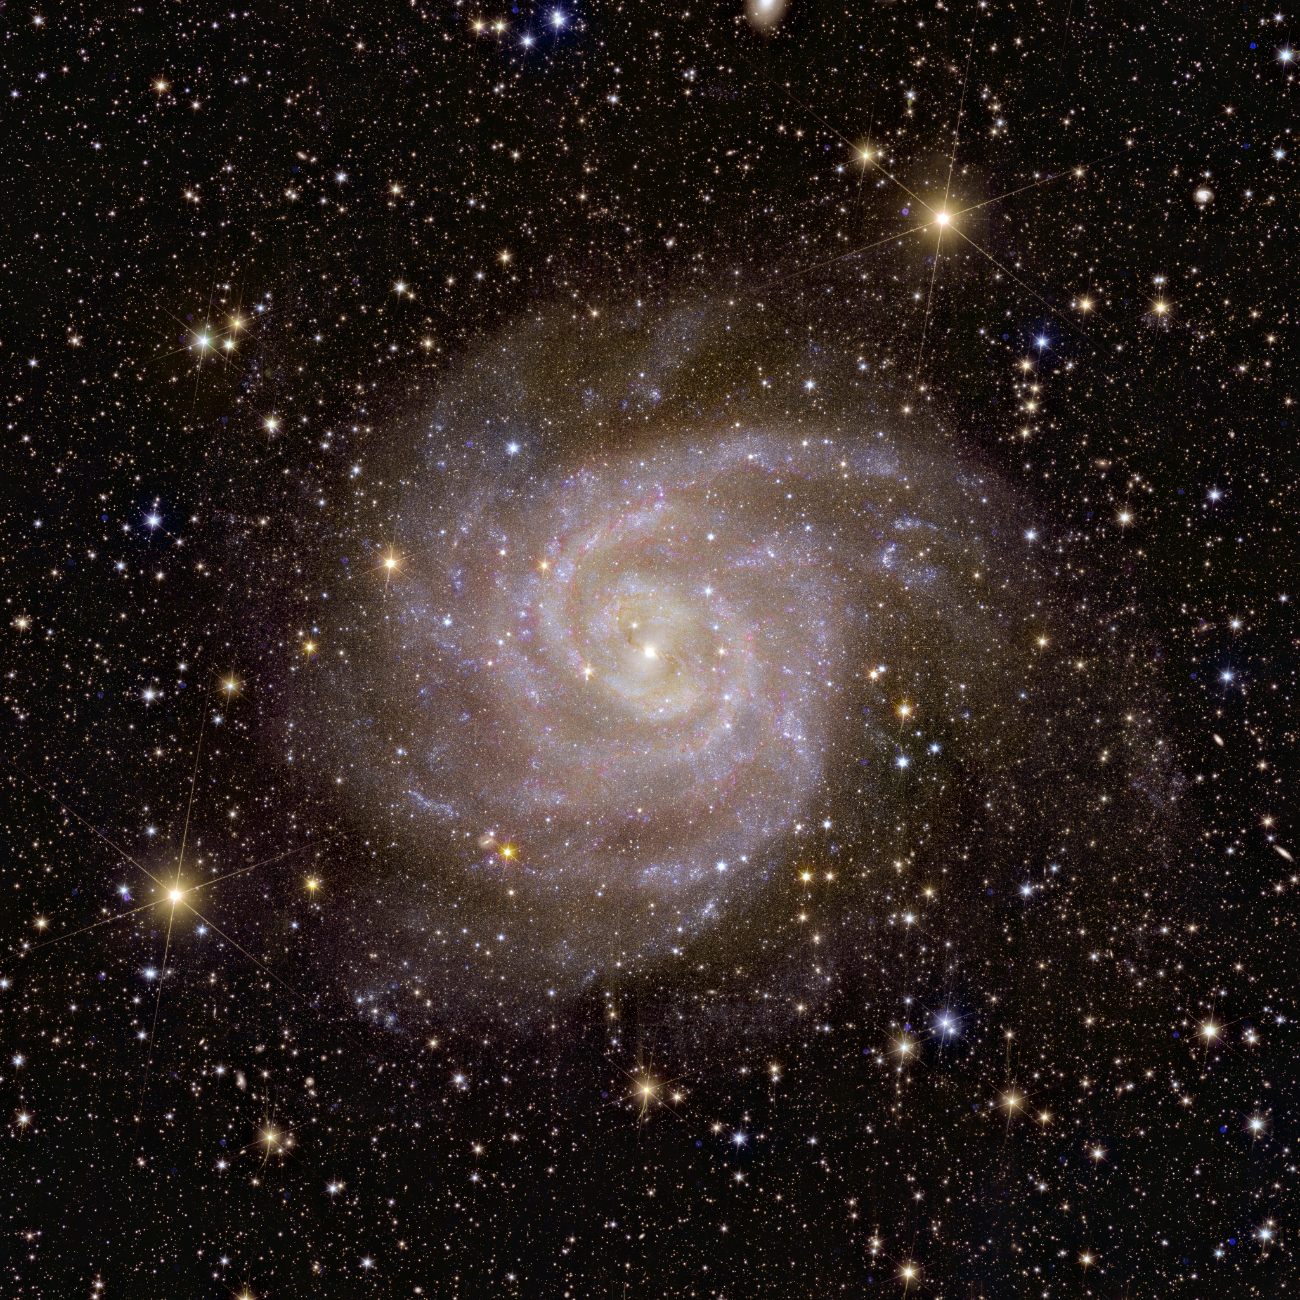 La galaxie spirale IC 342 est située à environ 11 millions d'années-lumière de la Terre, tout près de notre propre galaxie, en distance astronomique. [ESA/Euclid/Euclid Consortium/NASA - image processing J.-C. Cuillandre (CEA Paris-Saclay), G. Anselmi; CC BY-SA 3.0 IGO]